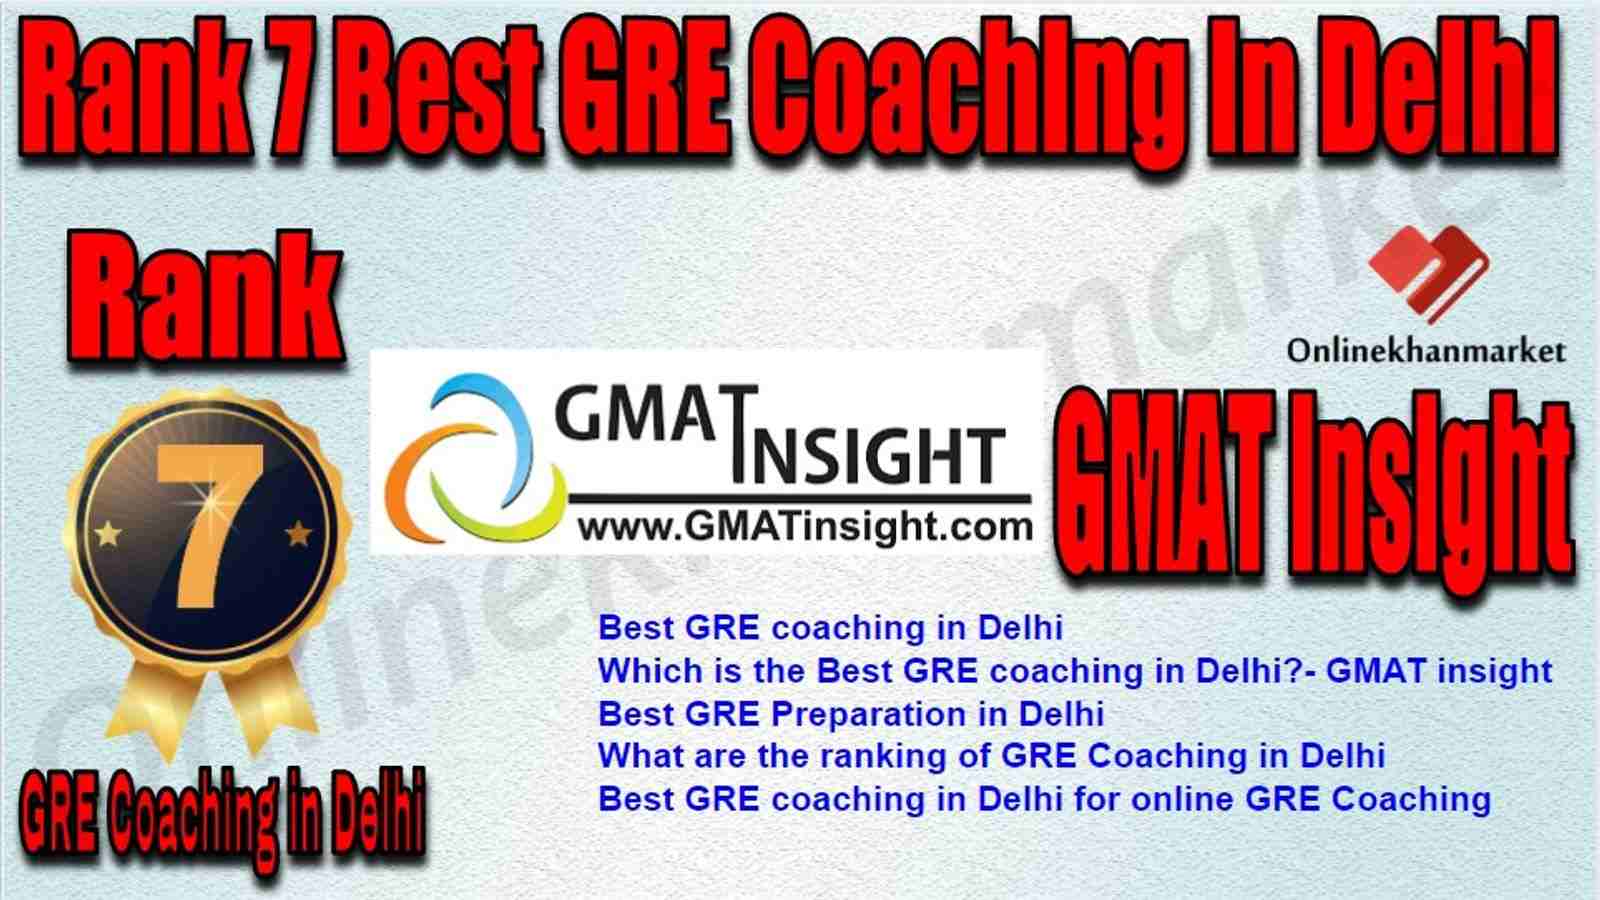 Rank 7 Best GRE Coaching in Delhi